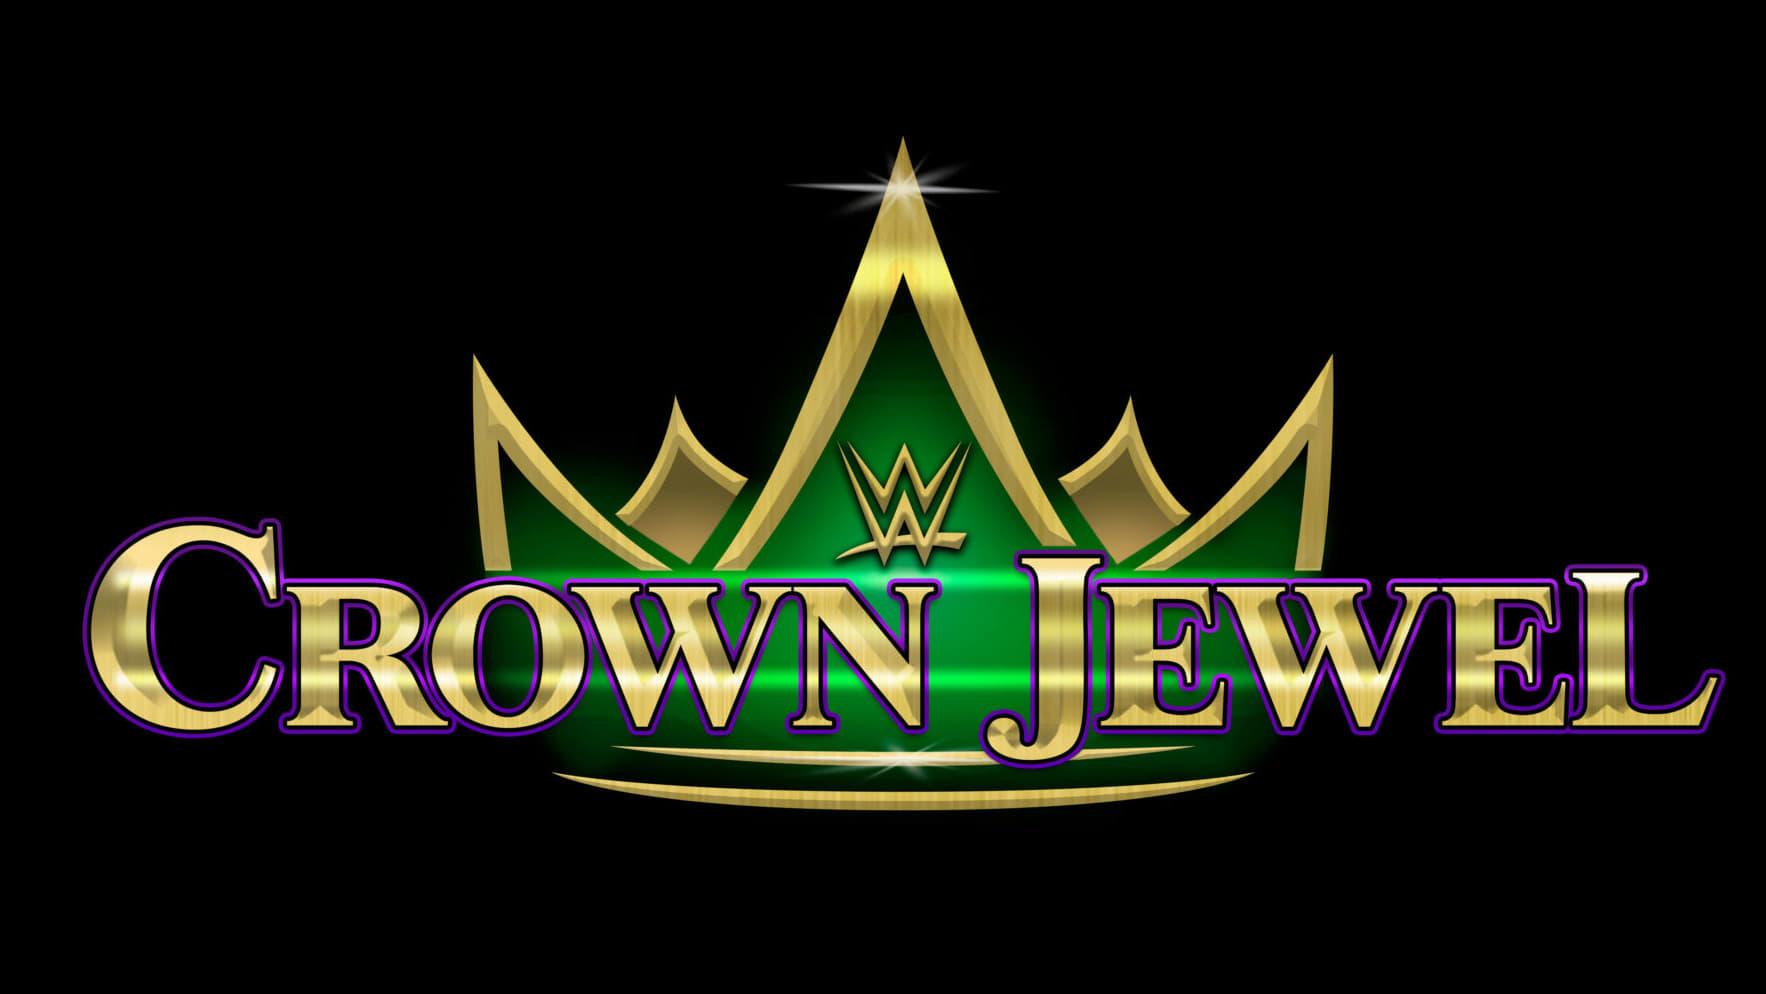 WWE Crown Jewel 2019 backdrop